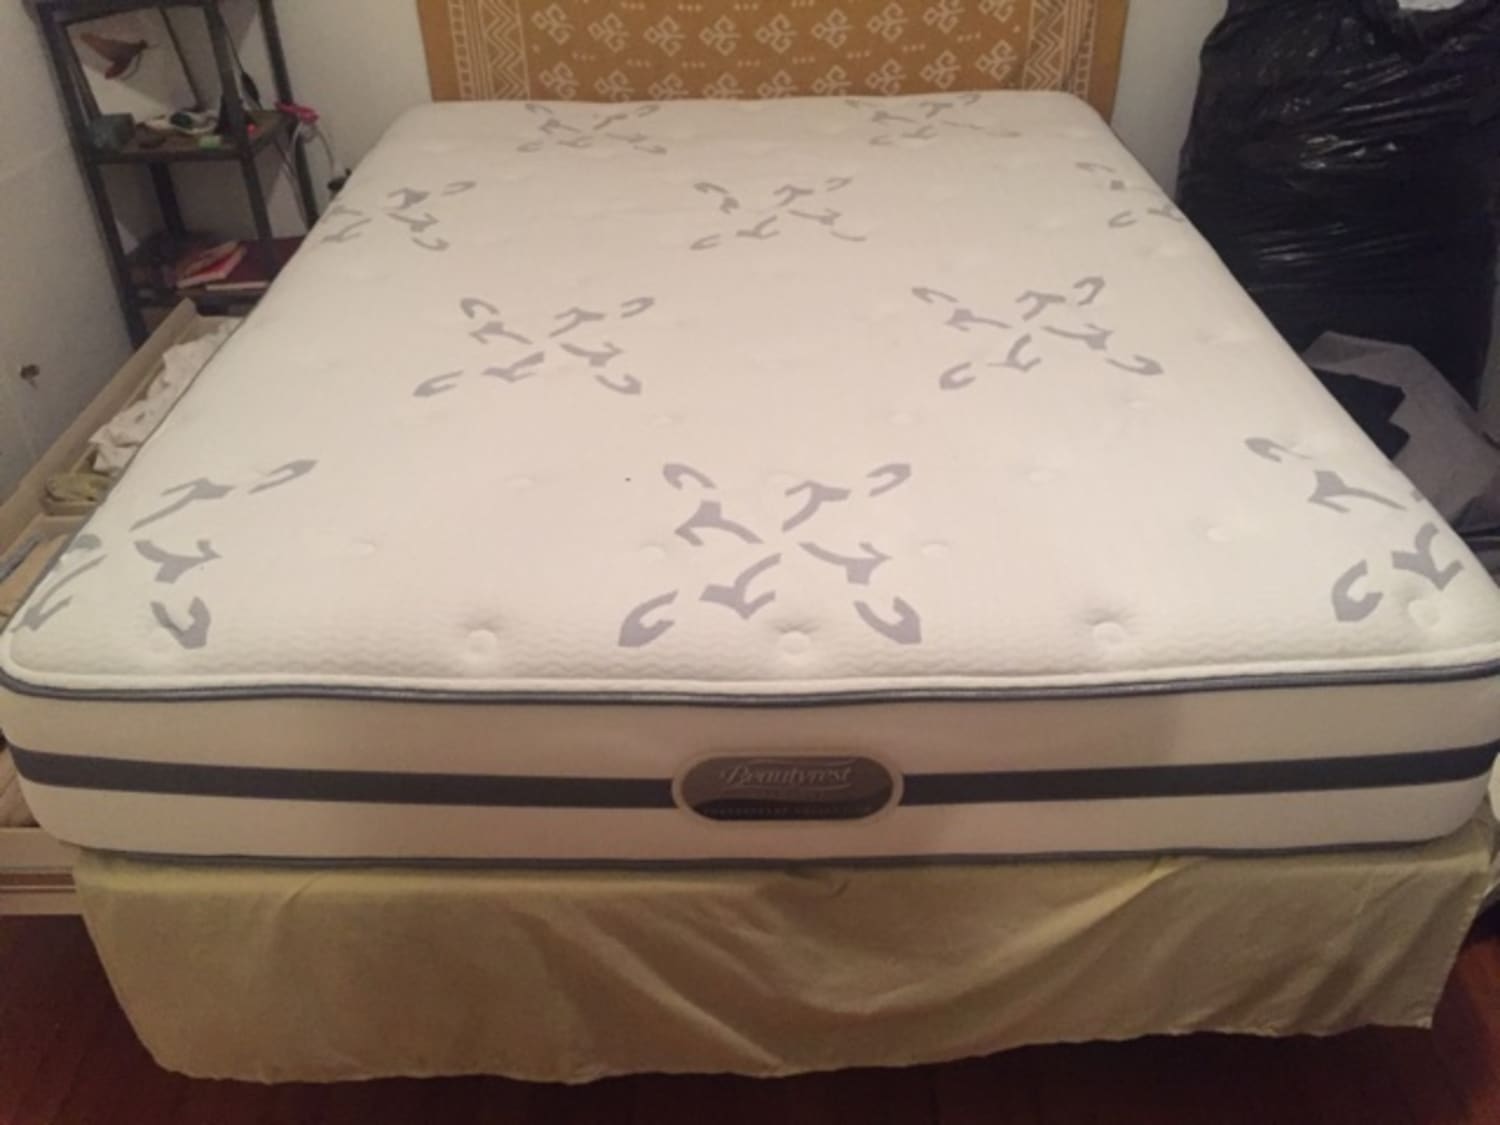 weight of a queen pillowtop mattress